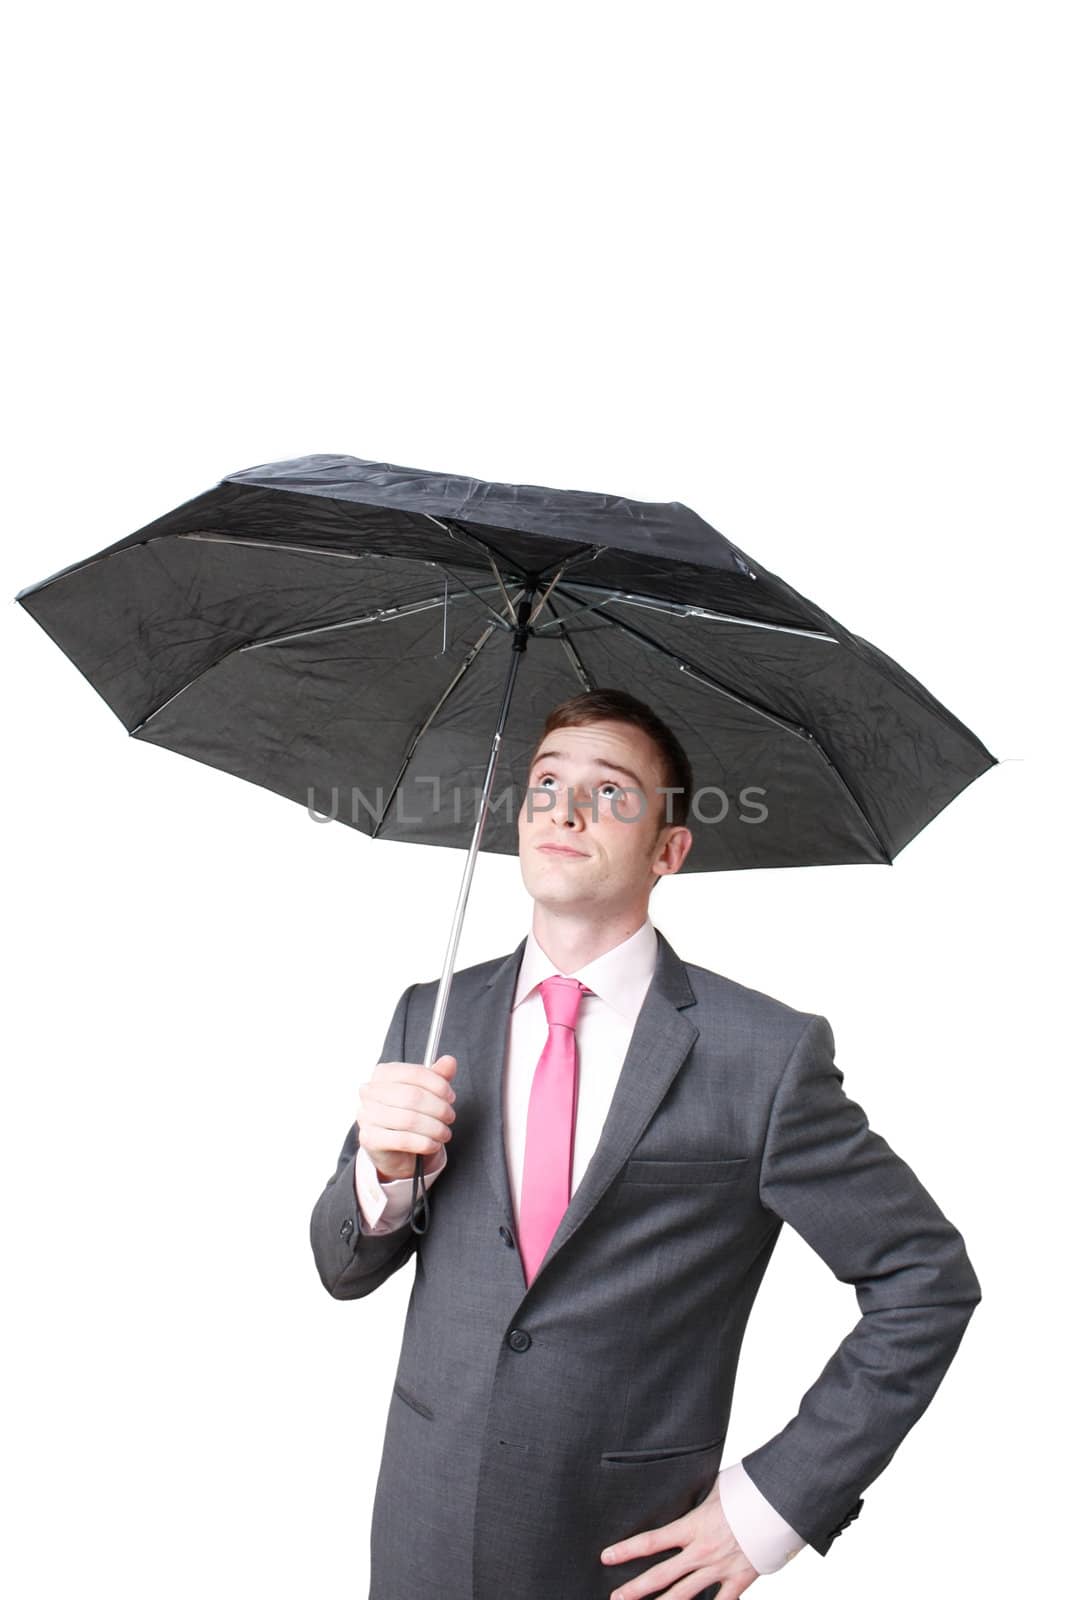 A business man hiding under an umbrella